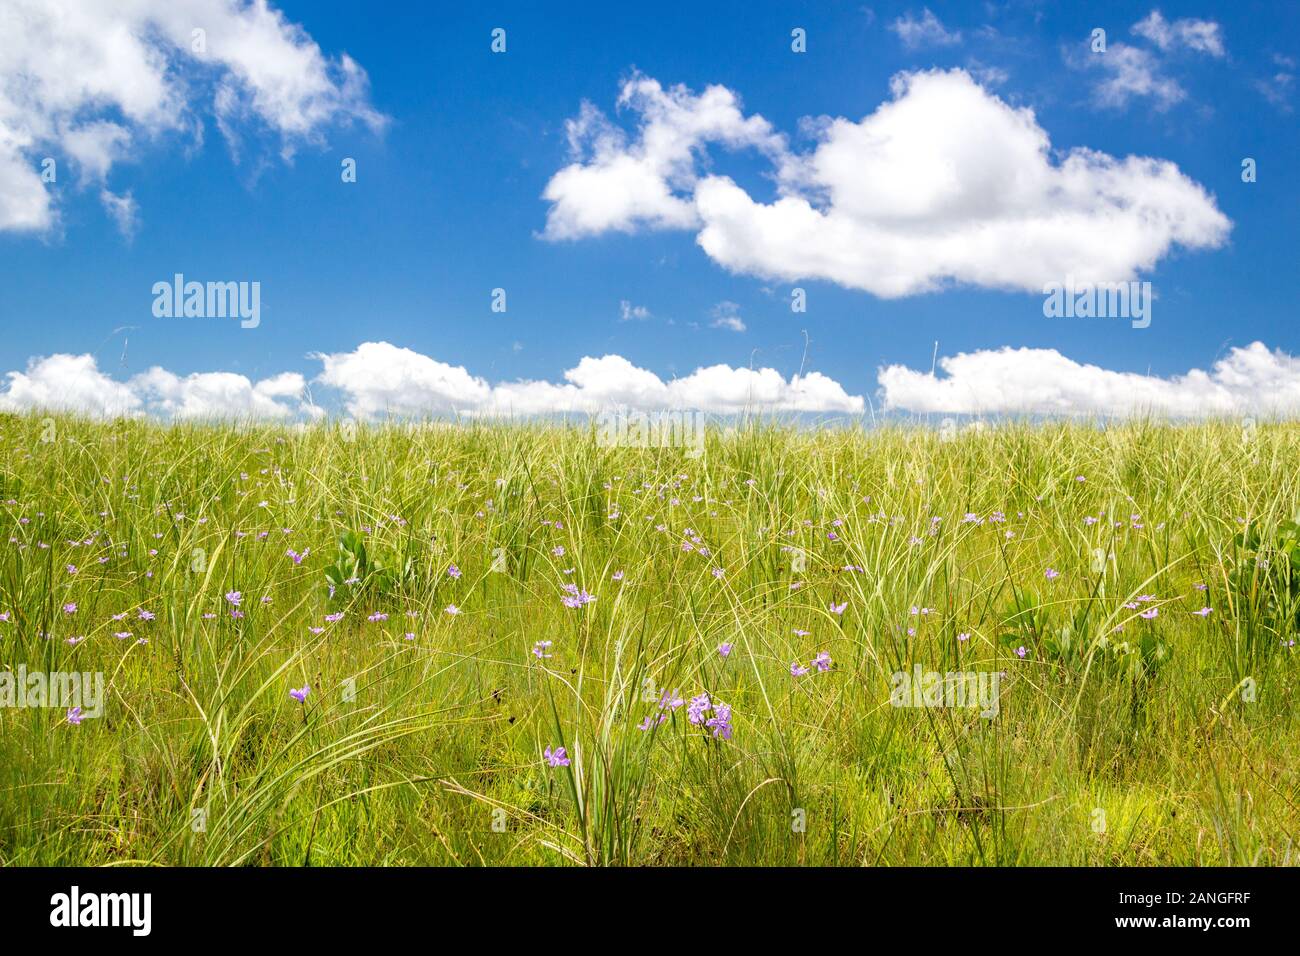 Weite grüne Wiese mit zarten violetten Blüten und einem strahlend blauen Himmel, Sommer Hintergrund Stockfoto